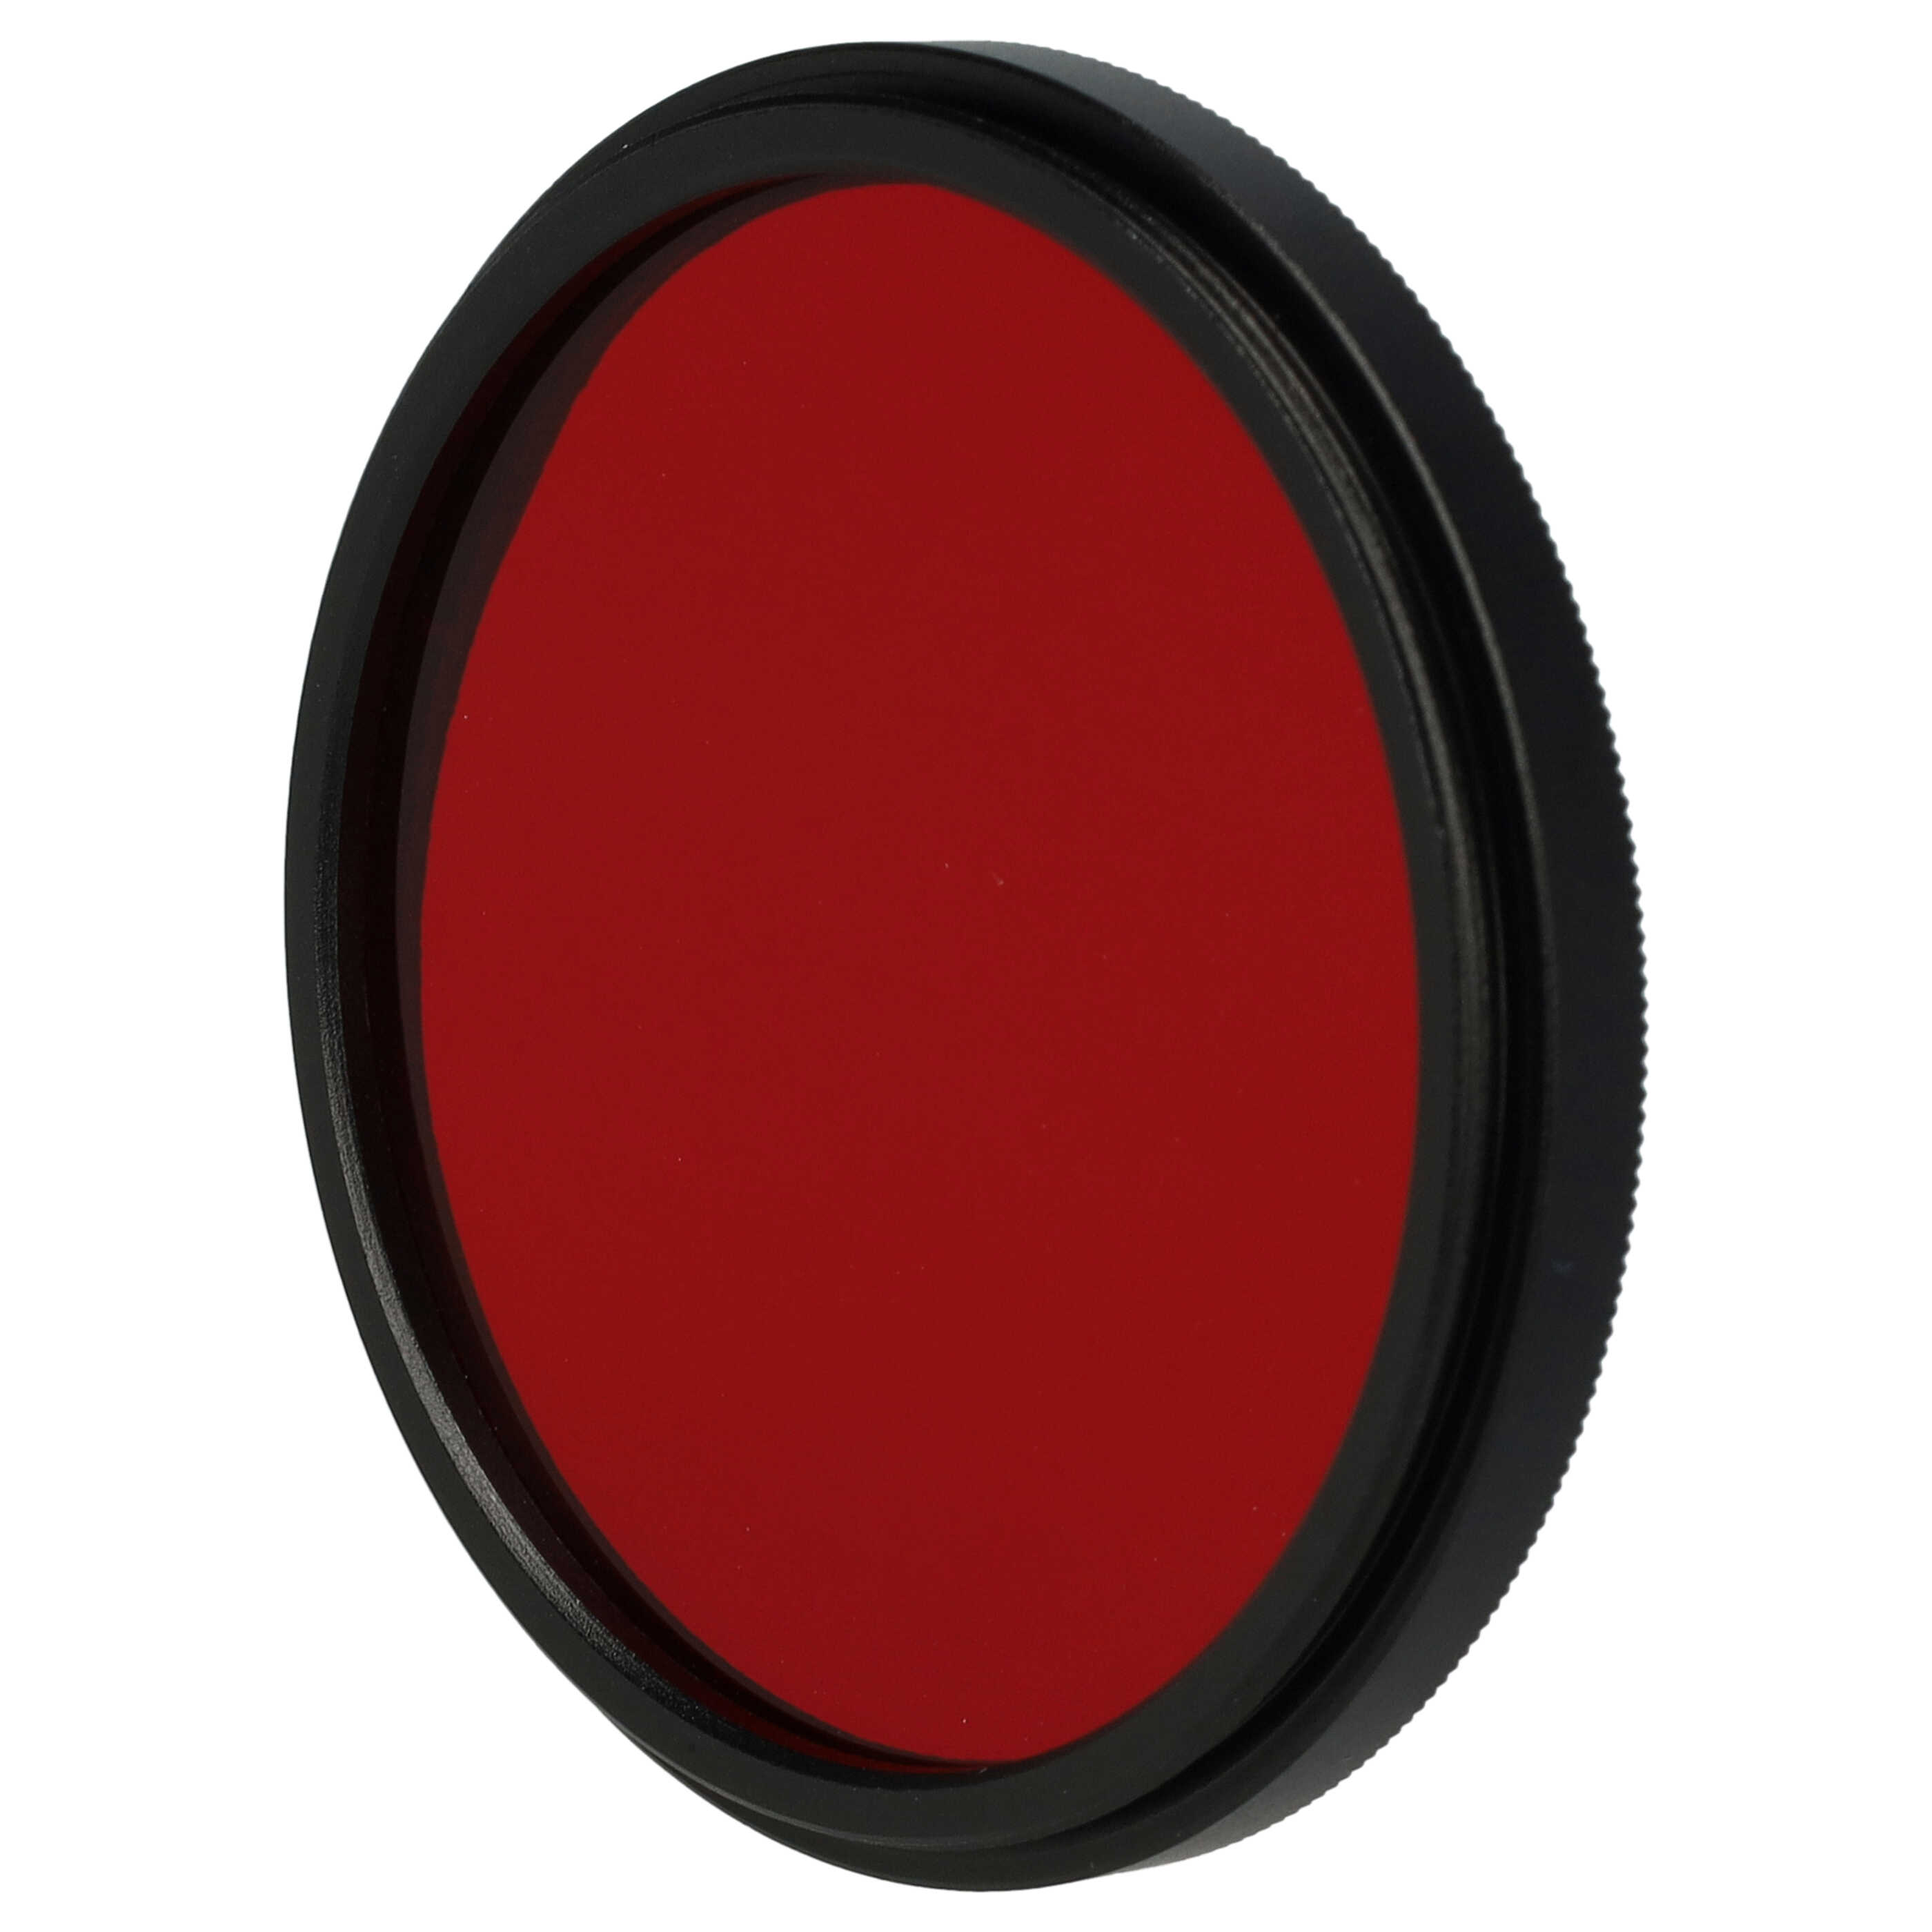 Filtro colorato per obiettivi fotocamera con filettatura da 49 mm - filtro rosso